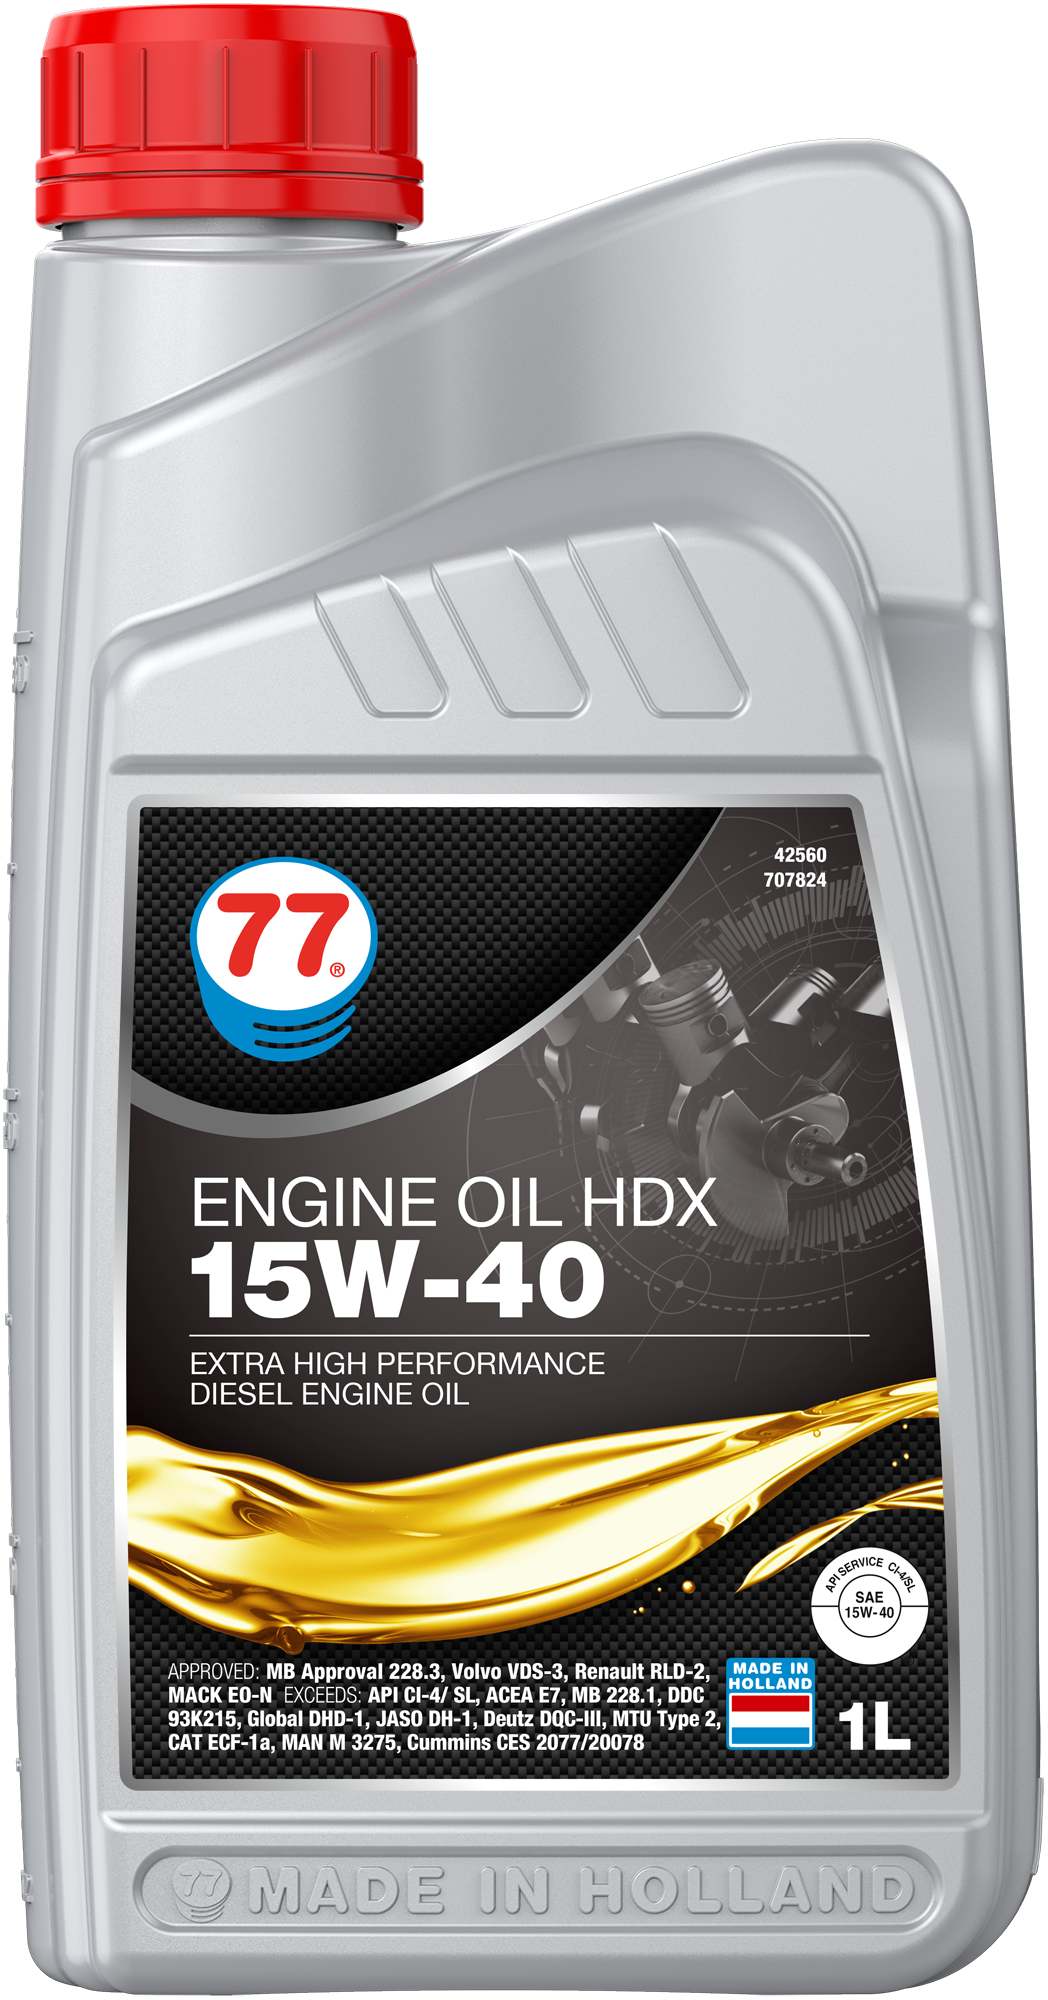 4256-1 Engine Oil HDX 15W-40 is een extra krachtige universele motorolie ontworpen voor dieselmotoren in lichte en zware bedrijfsvoertuigen.